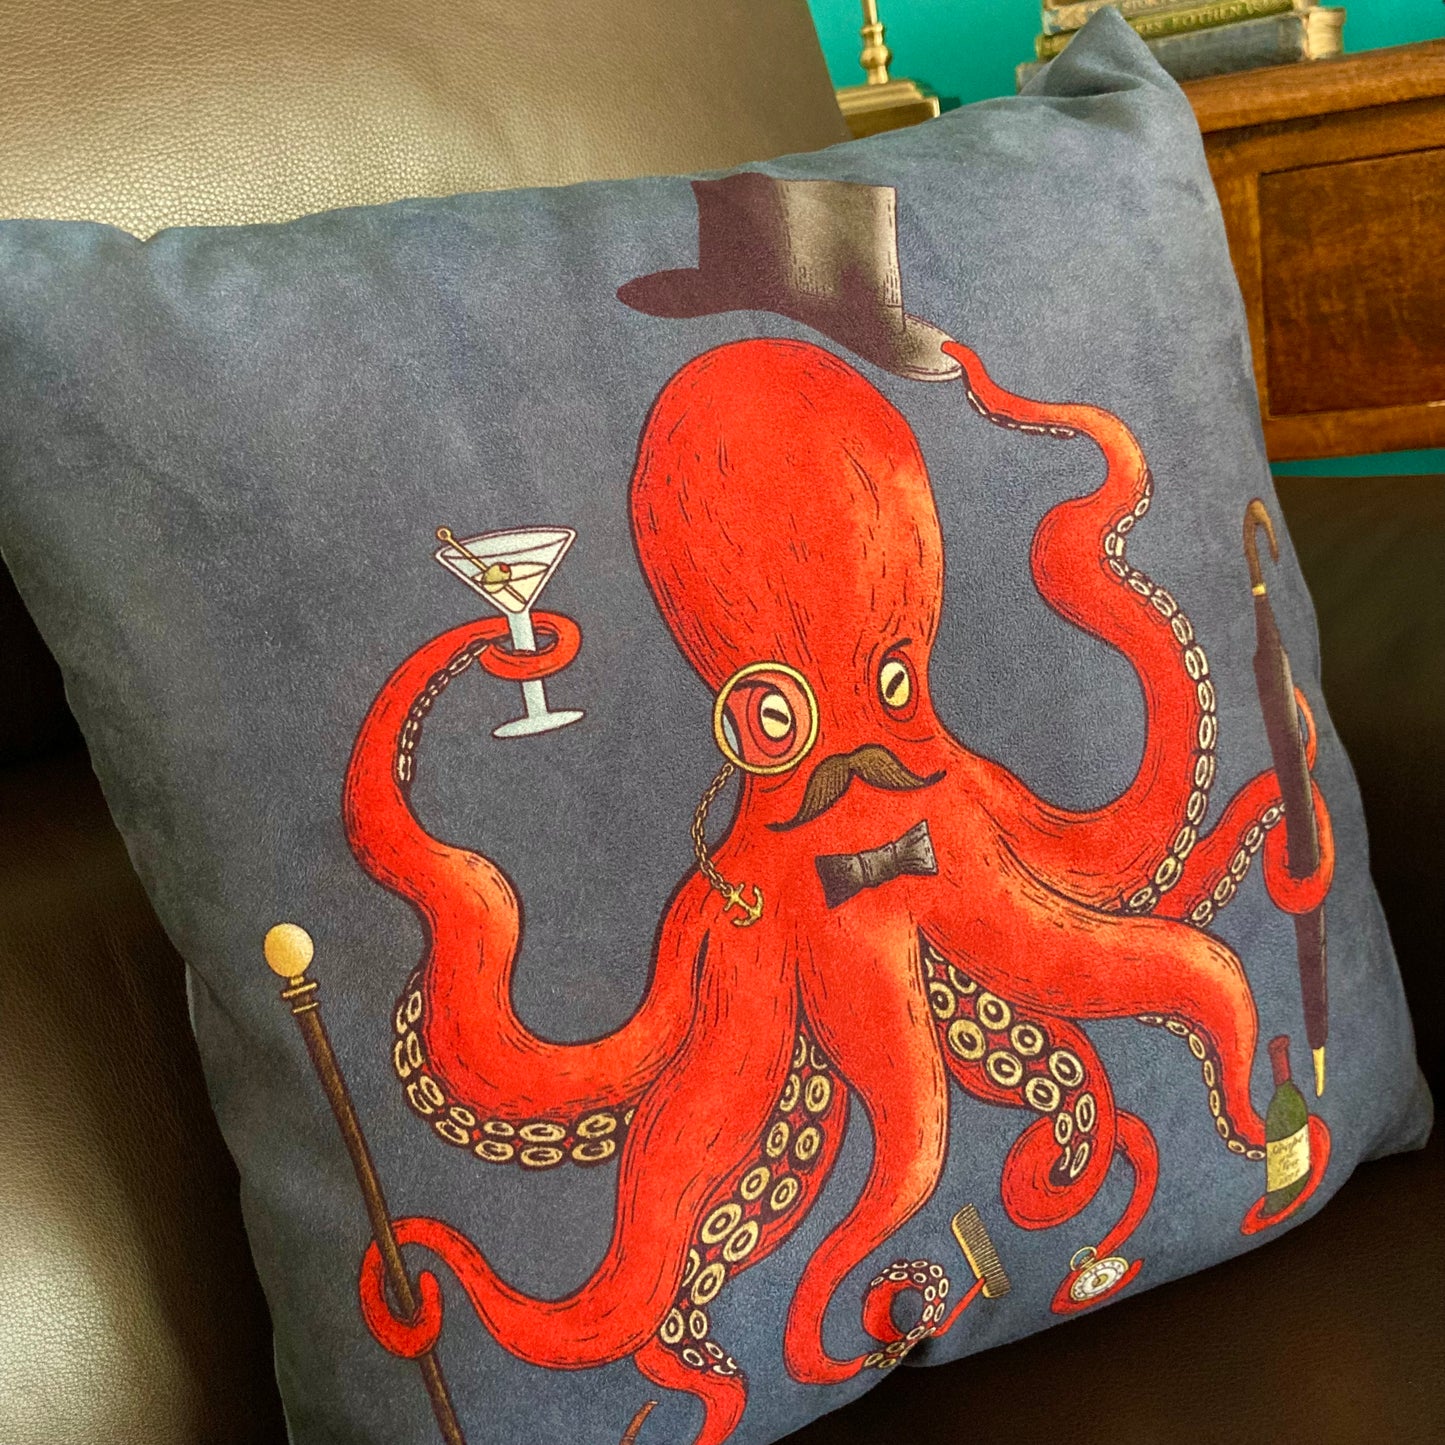 Deeply Dapper Octopus Cushion